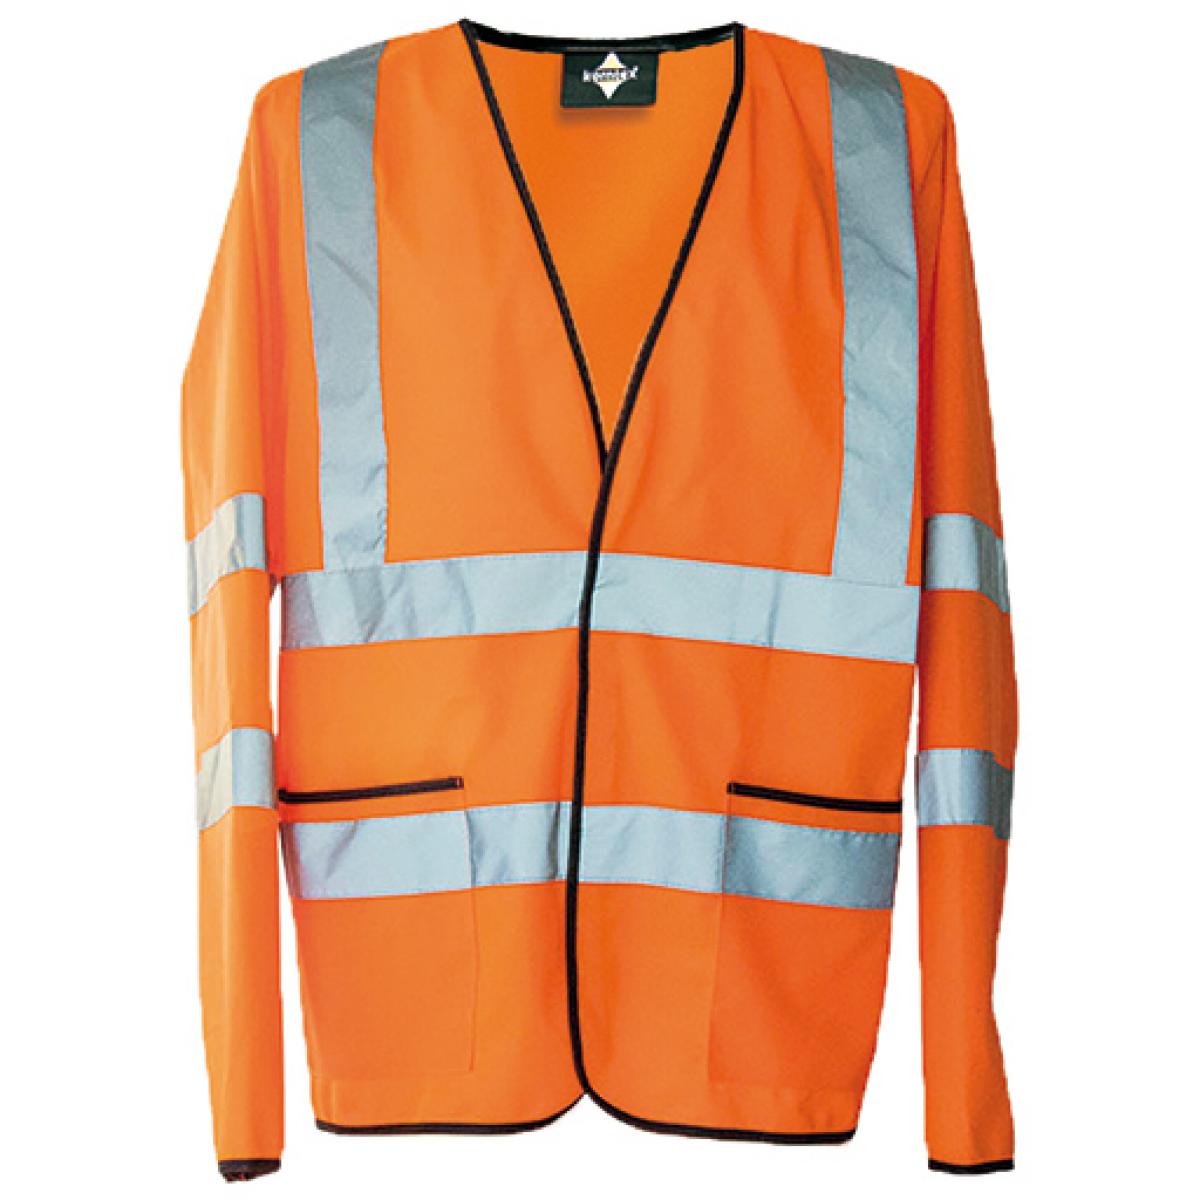 Hersteller: Korntex Herstellernummer: KXLWJ Artikelbezeichnung: Herren Light Weight Hi-Viz Jacket EN ISO 20471 Class 3 Farbe: Signal Orange